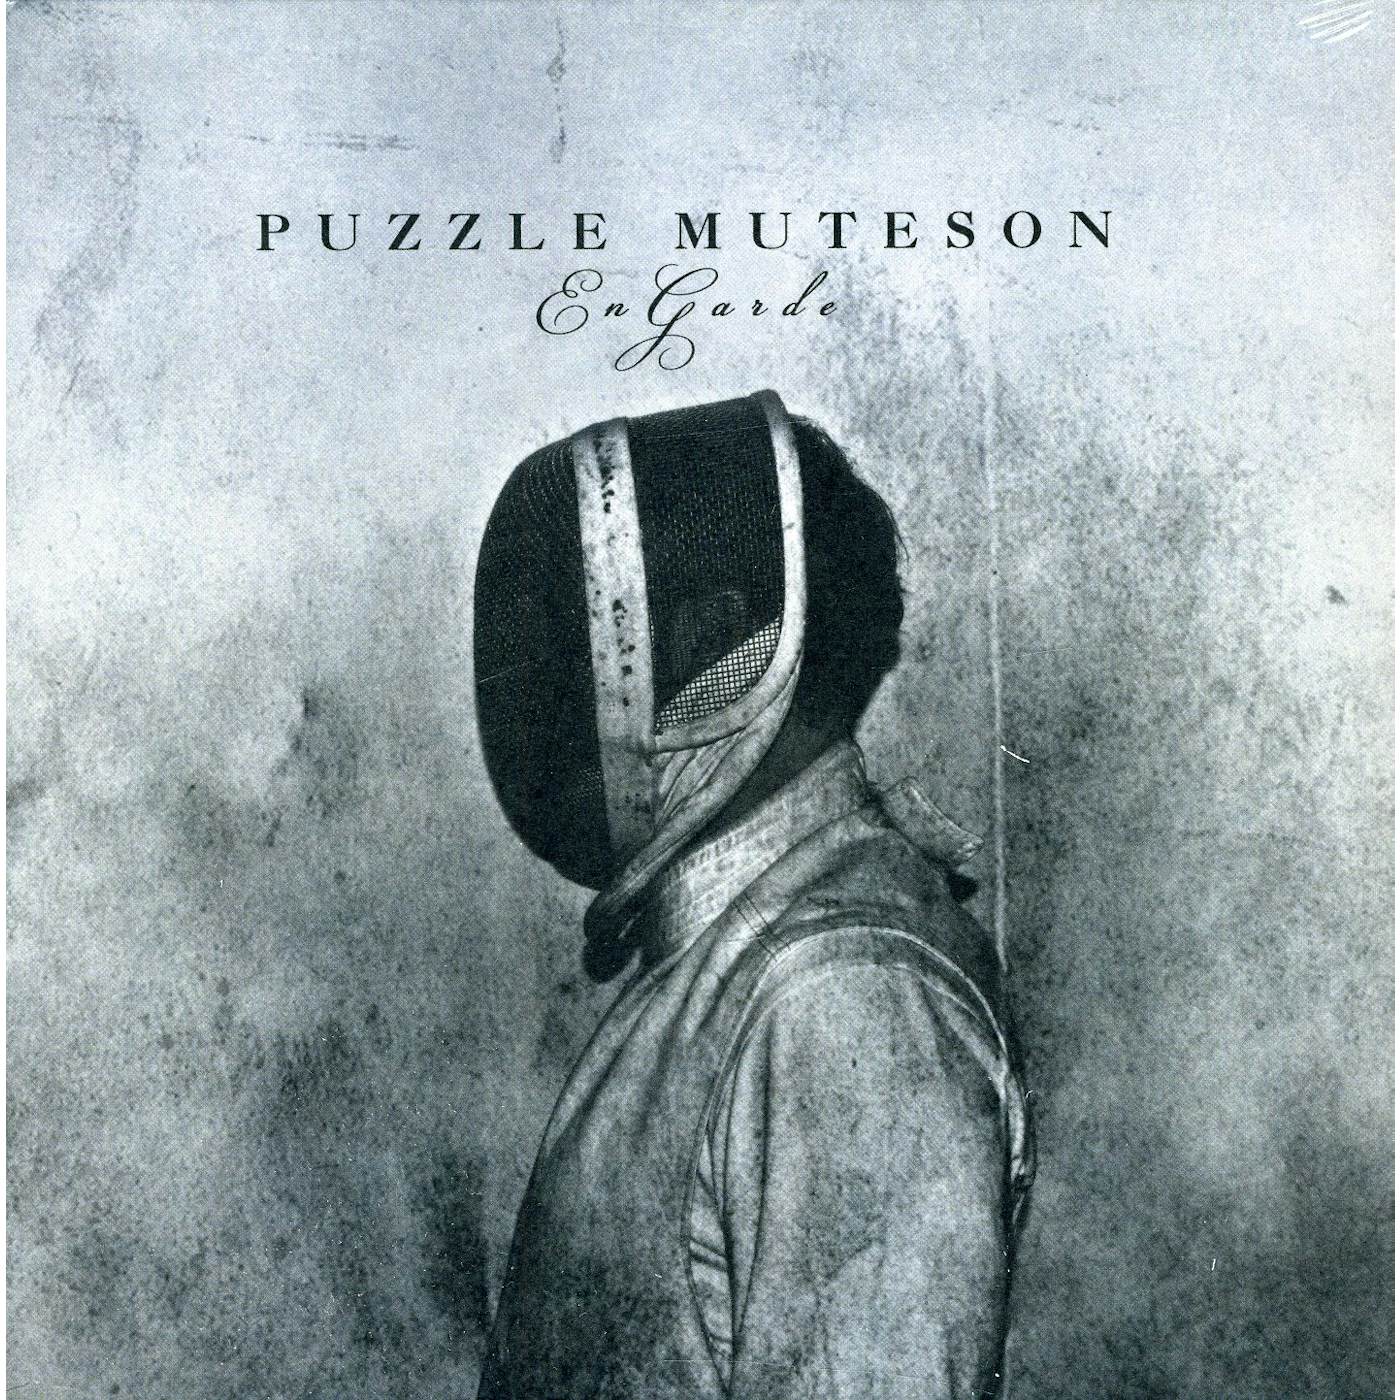 Puzzle Muteson En Garde Vinyl Record